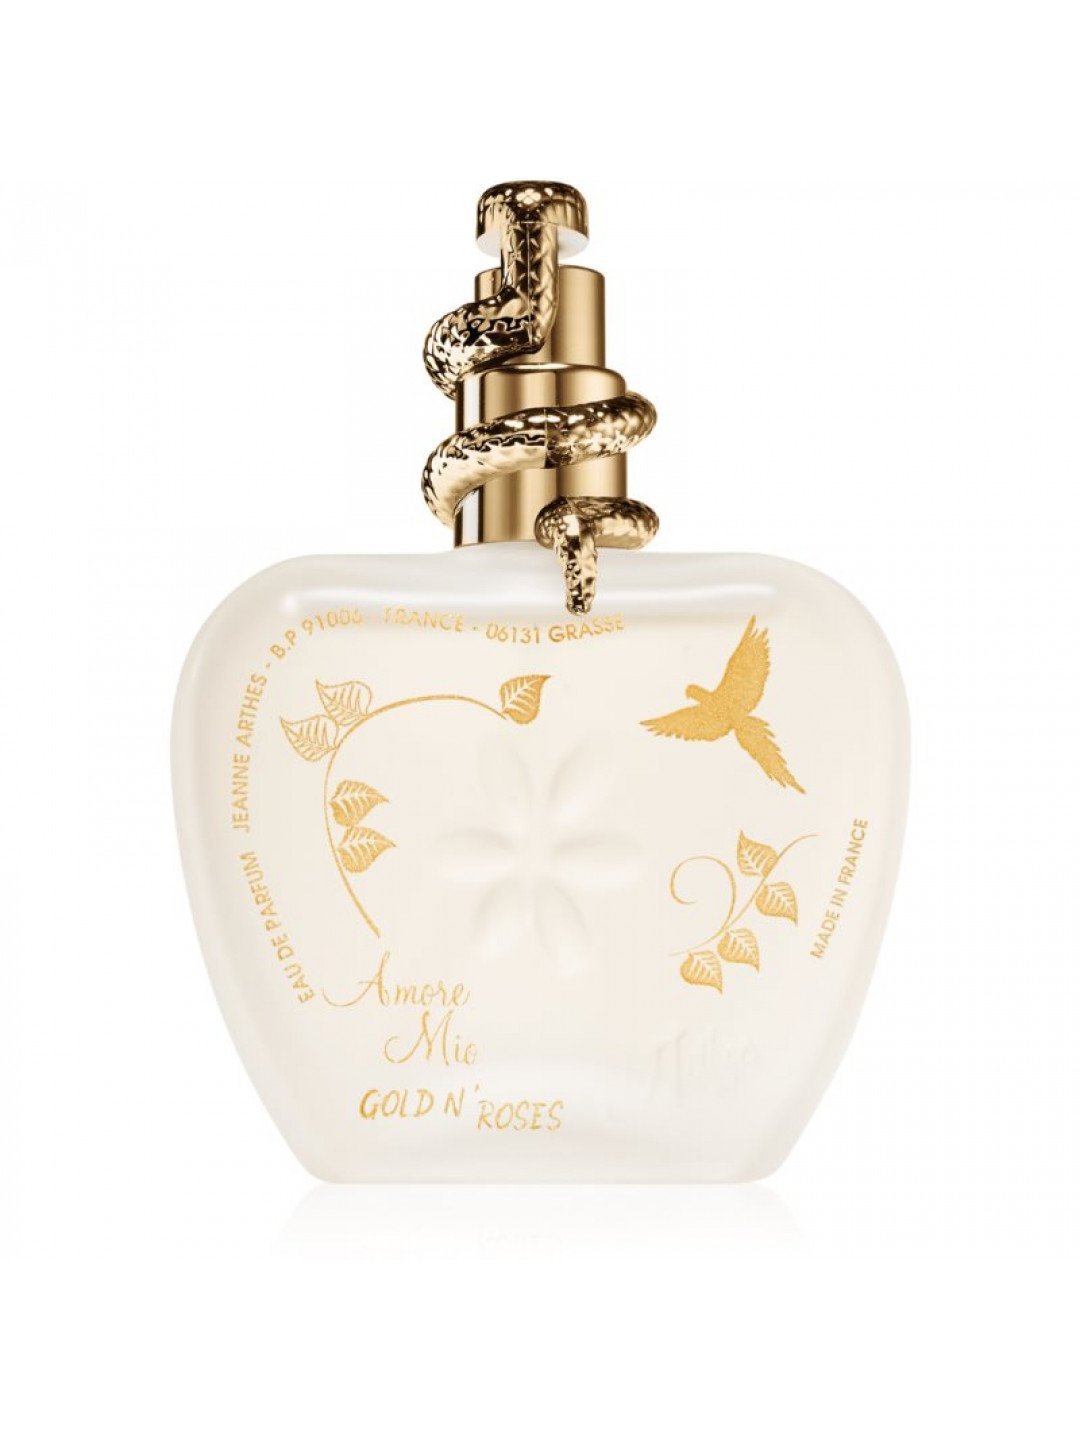 Jeanne Arthes Amore Mio Gold n Roses parfémovaná voda limitovaná edice pro ženy 100 ml